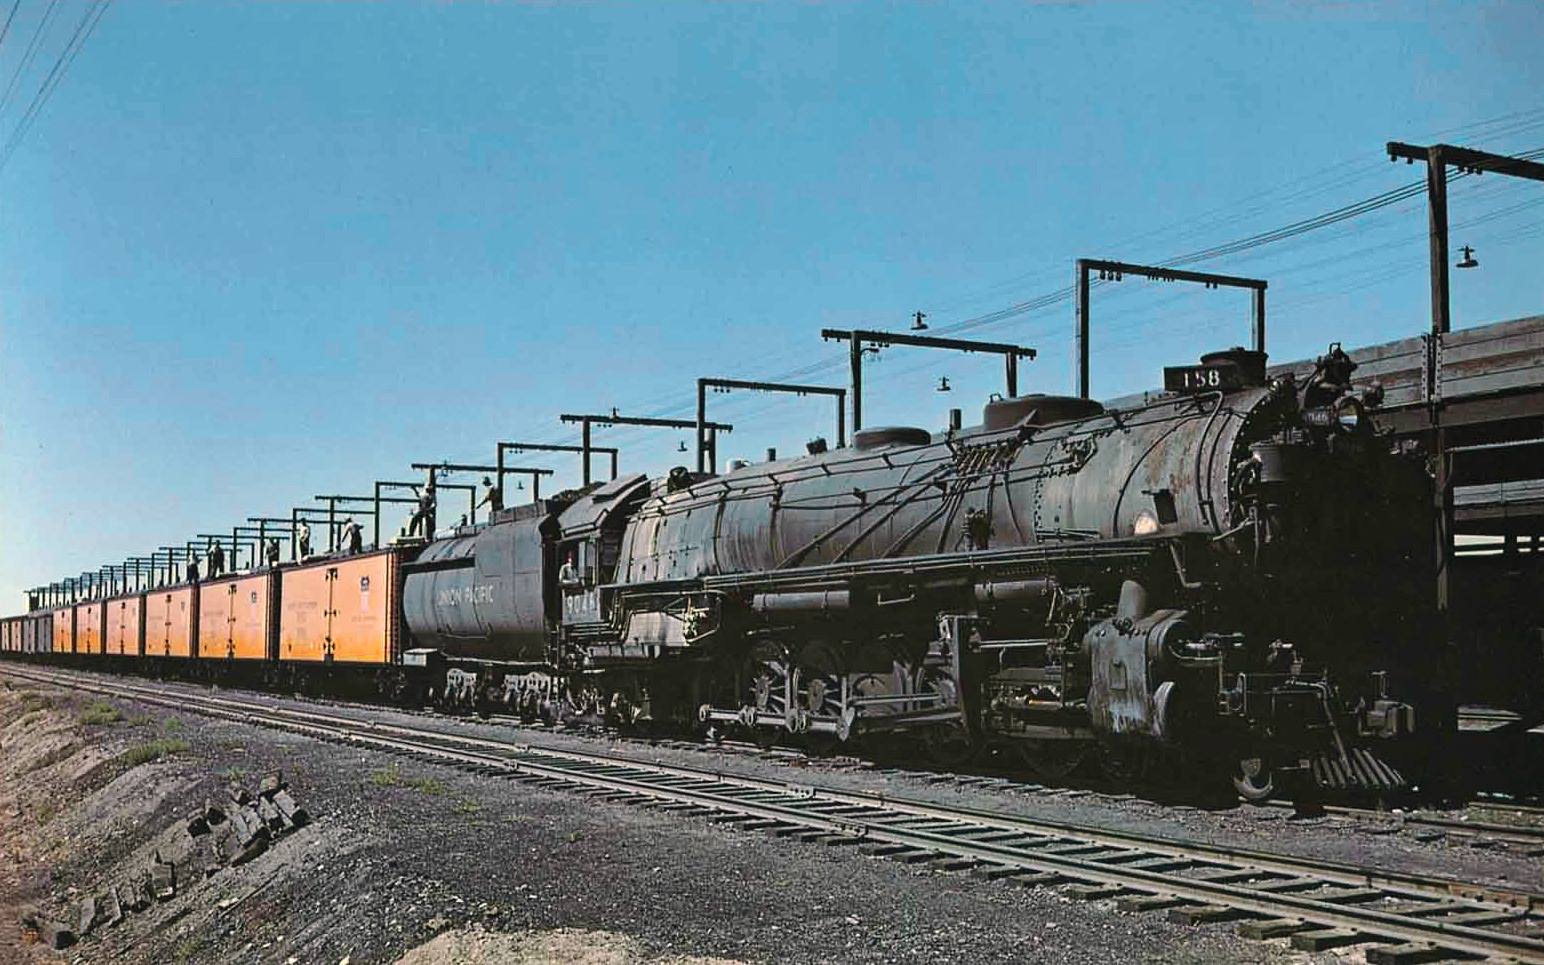 9000 Union Pacific Railroad Steam Locomotives